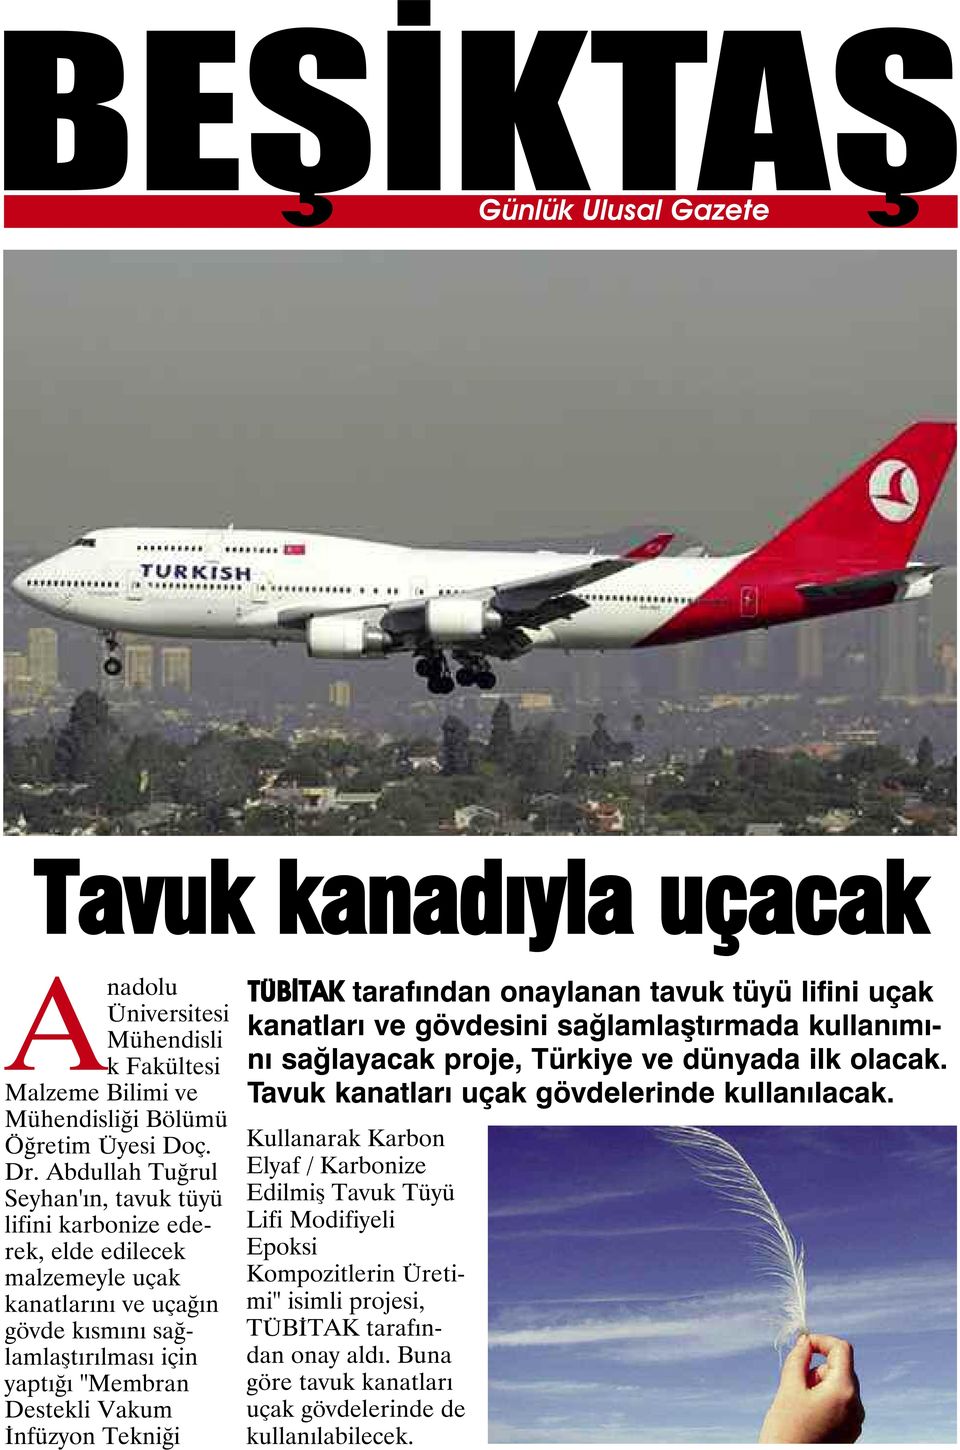 İnfüzyon Tekniği TÜBİTAK tarafından onaylanan tavuk tüyü lifini uçak kanatları ve gövdesini sağlamlaştırmada kullanımını sağlayacak proje, Türkiye ve dünyada ilk olacak.